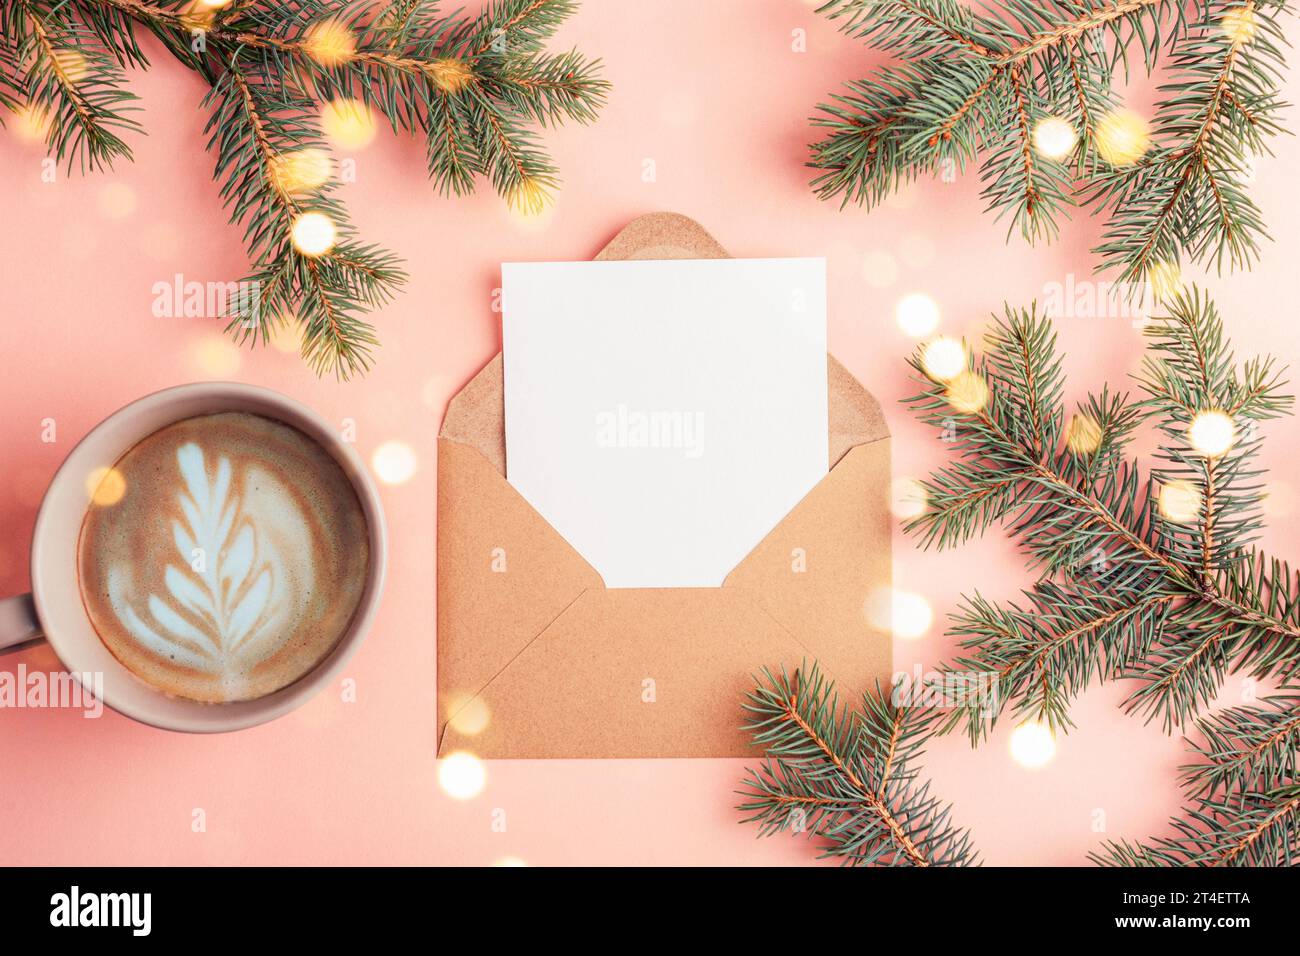 Busta con cartolina vuota, tazza da caffè e rami di abete con luci natalizie sul tavolo rosa. Concetto di Natale. Vista dall'alto, base piatta, mockup. Foto Stock